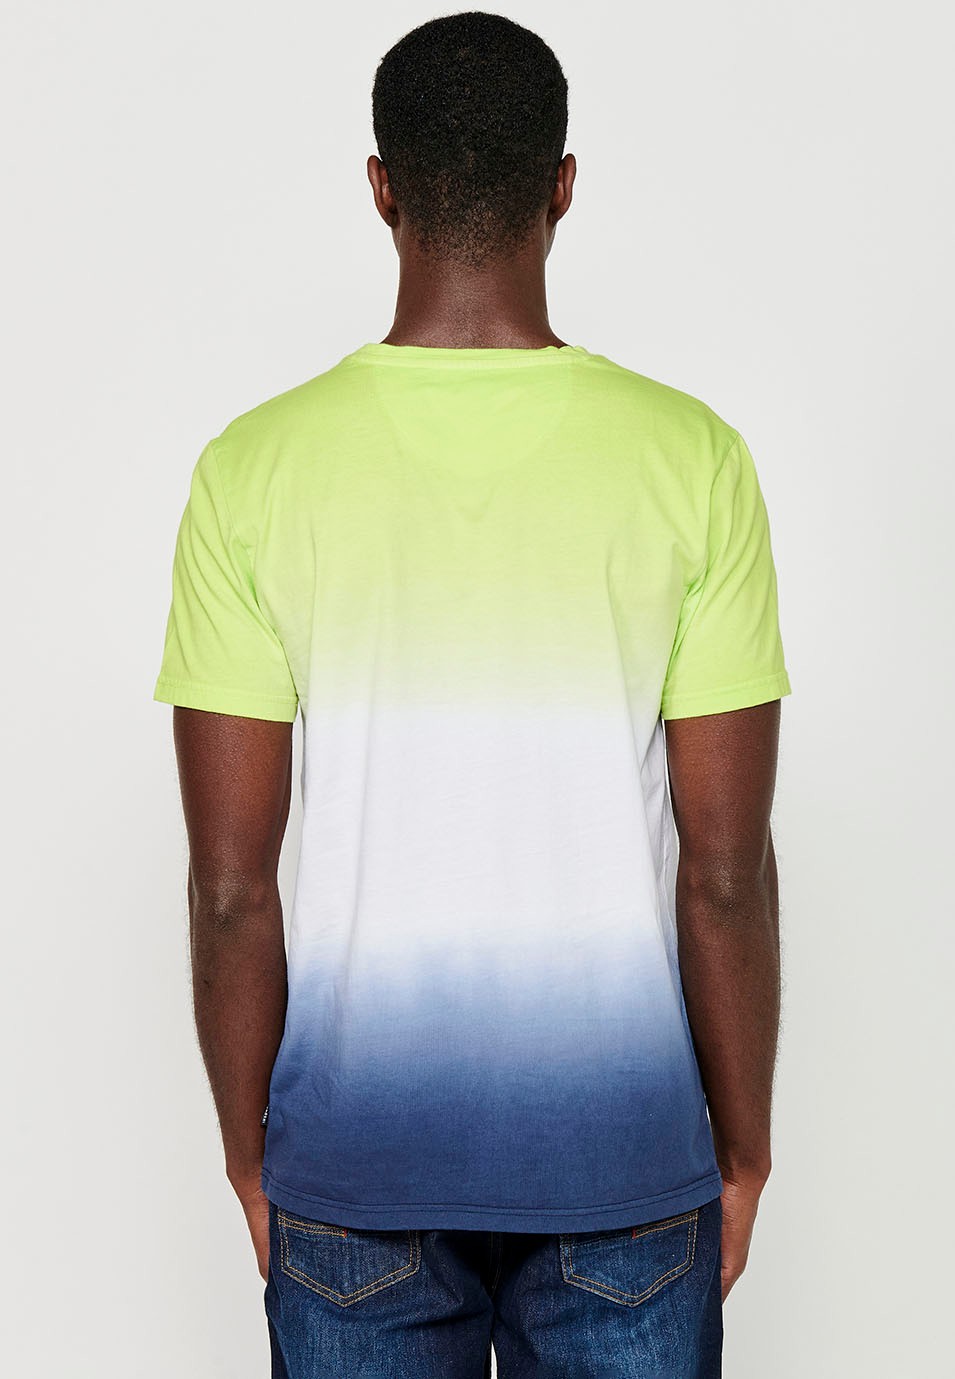 Camiseta de manga corta de Algodón con Cuello redondo y Bordado delantero con Efecto degradado de Color Lima para Hombre 6